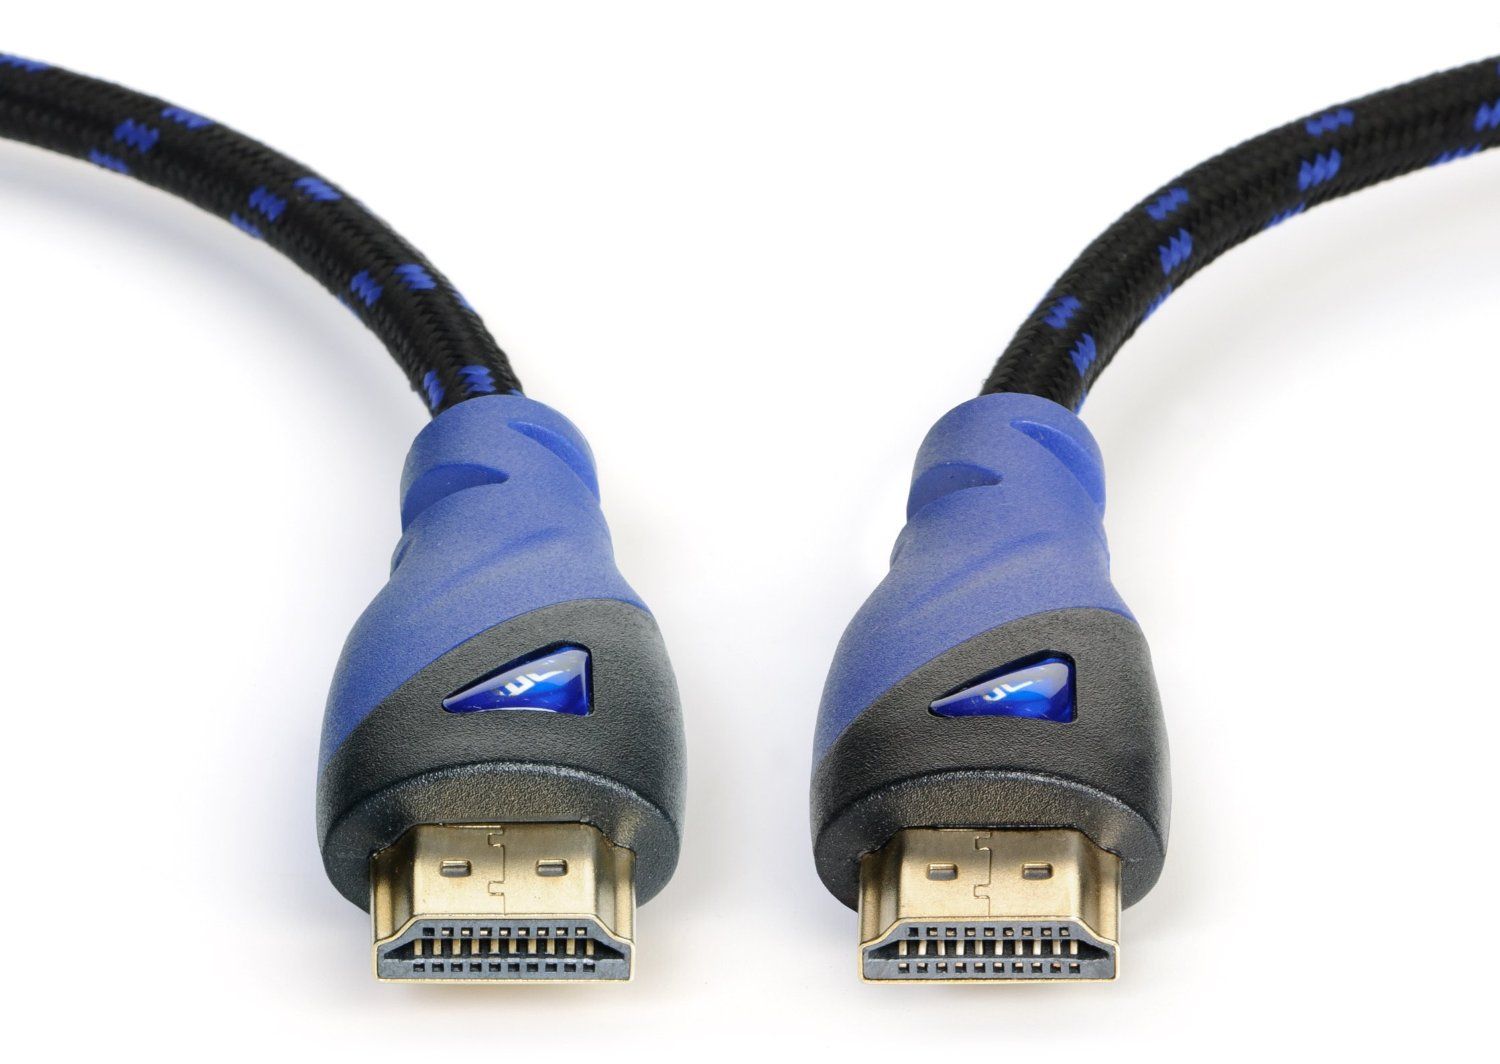 Series ultra 2. Скоростной провод HDMI. HDMI кабель в оплетке.